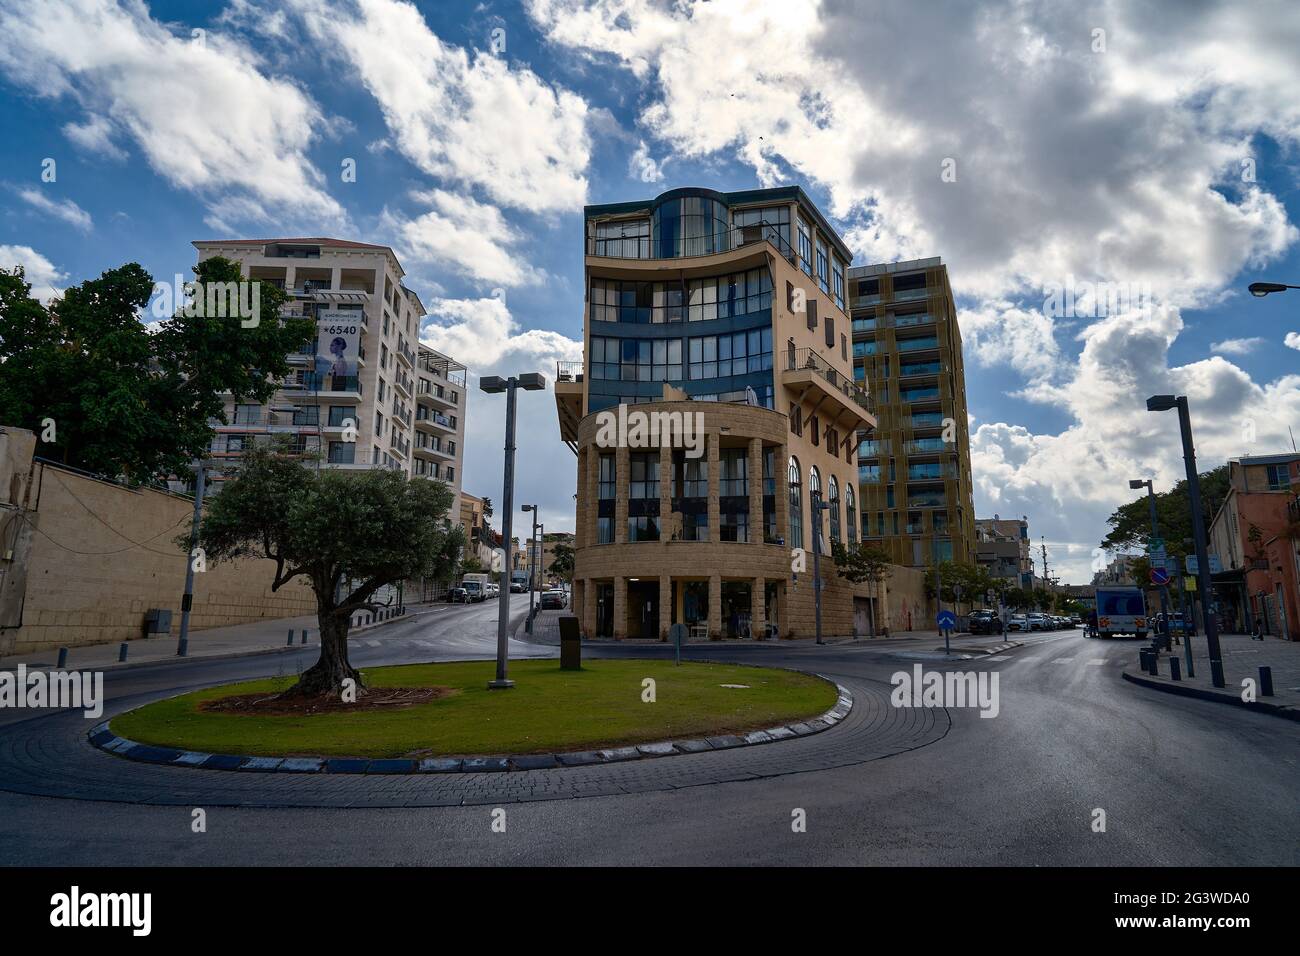 Jaffa, ein modernes Gebäude mit vielen Fenstern, die auf einen blau bewölkten Himmel blicken. Stockfoto